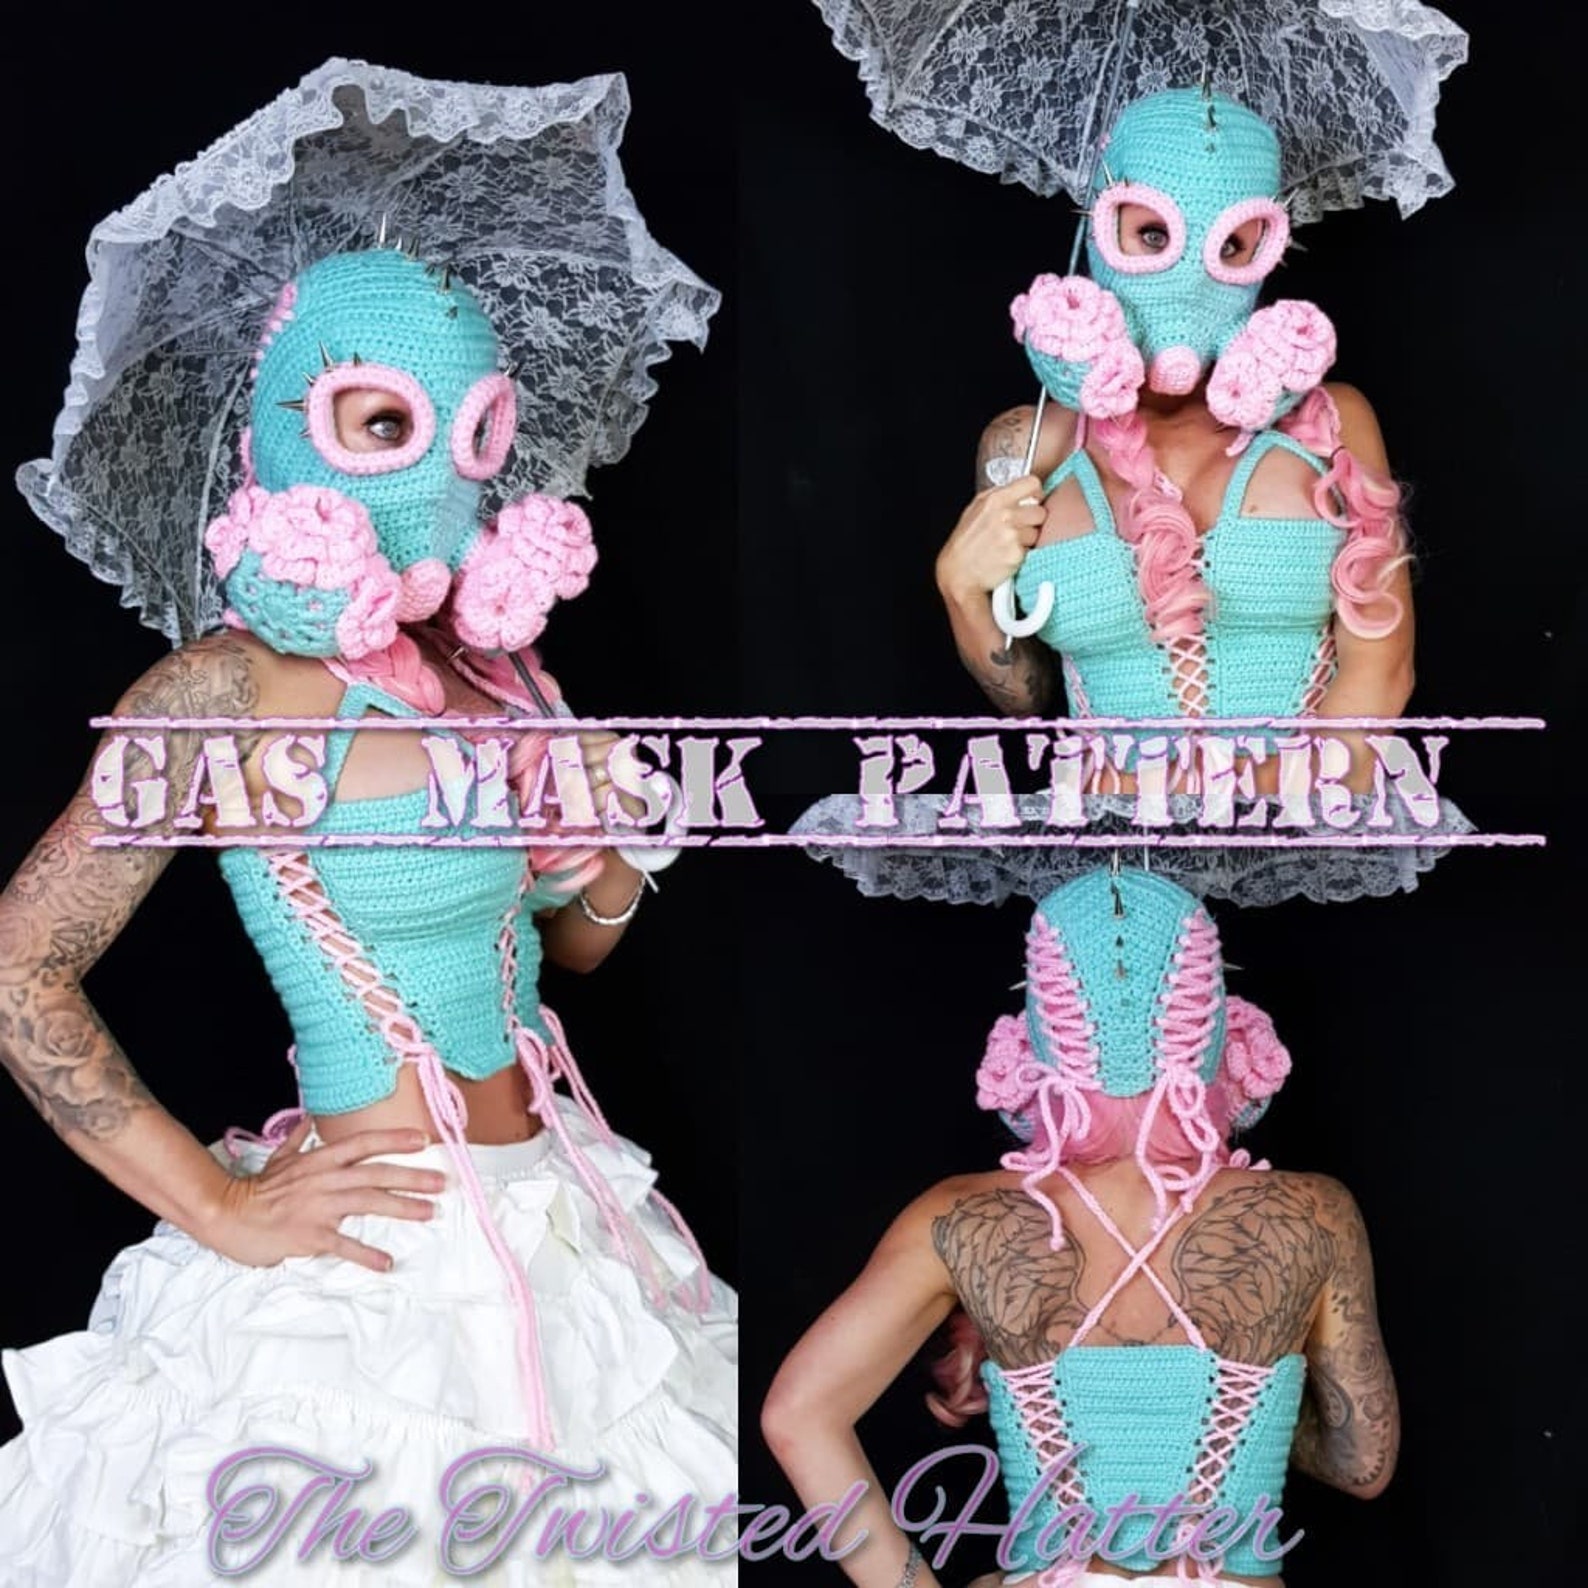 Gas Mask Gone Twisted crochet PATTERN